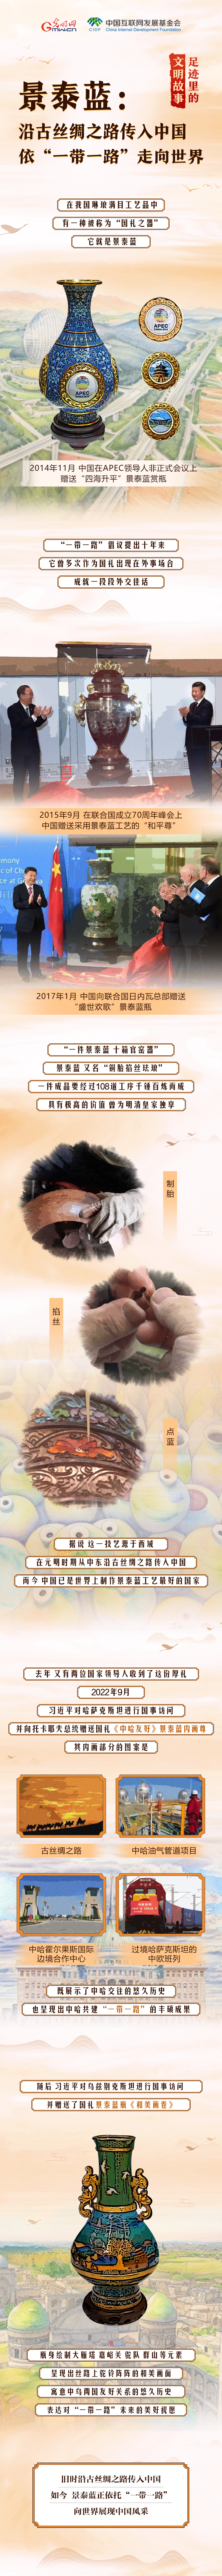 【大道共通】足迹里的文明故事丨景泰蓝：沿古丝绸之路传入中国 依“一带一路”走向世界